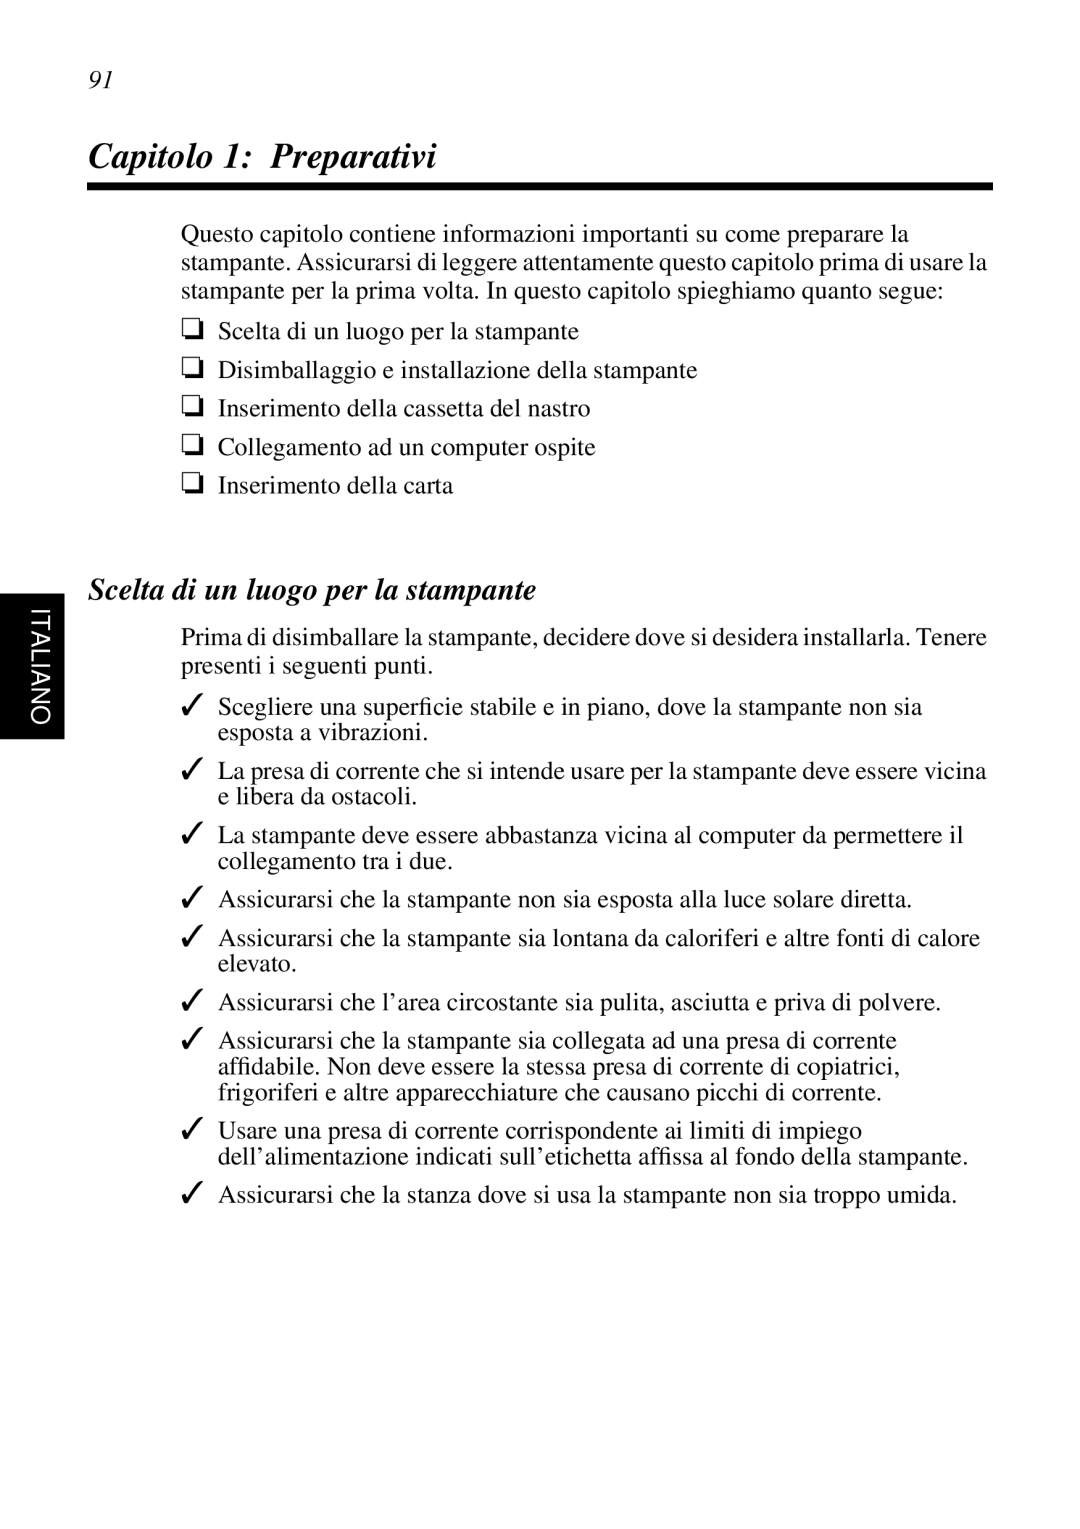 Star Micronics SP298 user manual Capitolo 1 Preparativi, Scelta di un luogo per la stampante, Italiano 